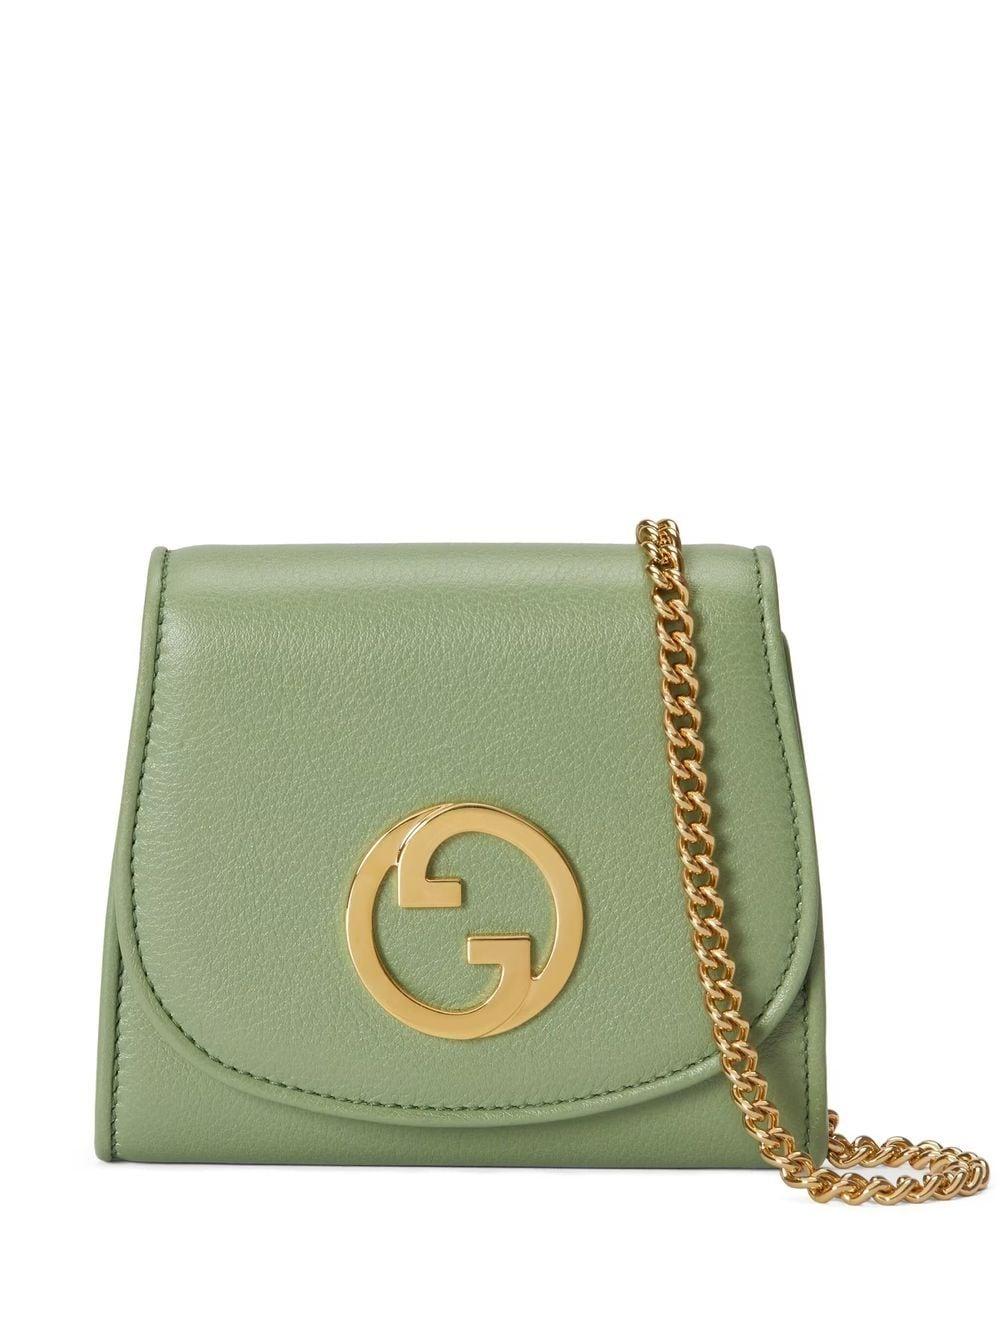 Gucci Blondie Chain Wallet in Green | Lyst